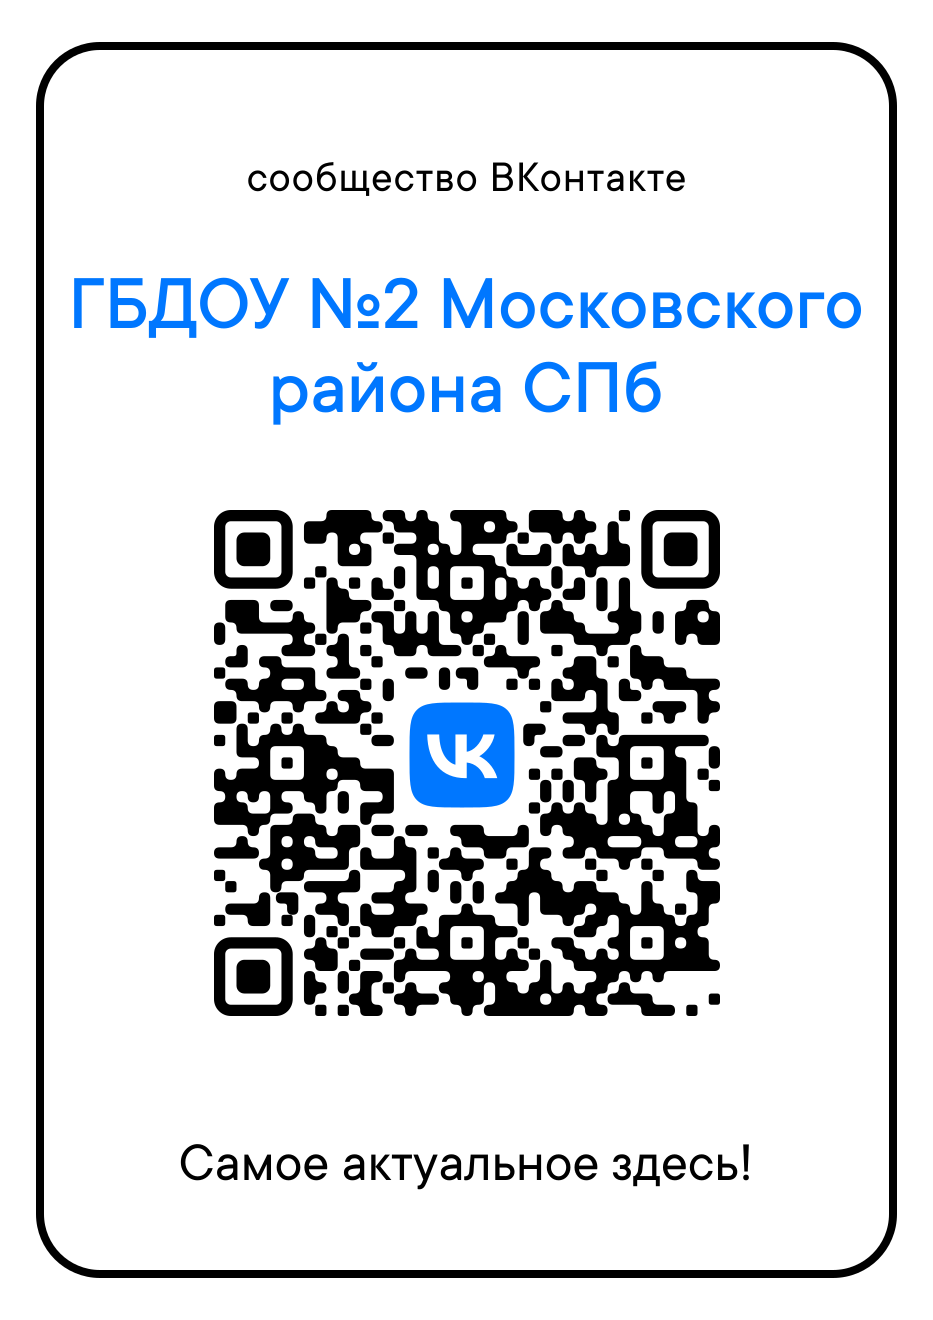 Официальная группа в сообществе ВКонтакте